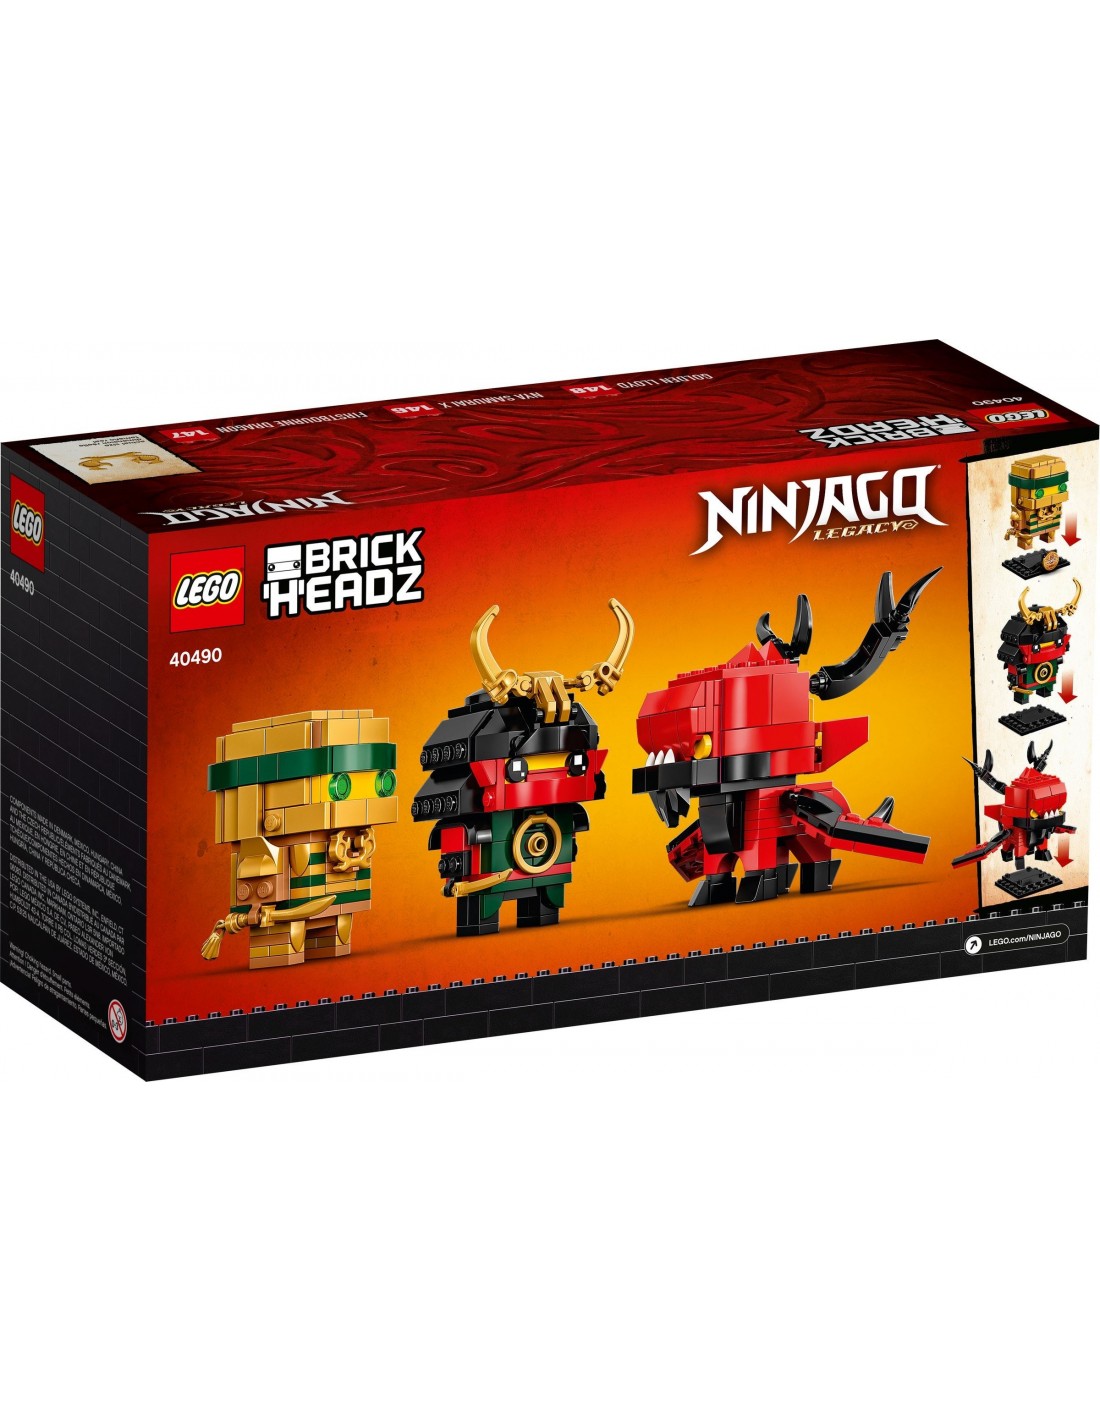 LEGO BrickHeadz - Ninjago 10 ans - 40490 - En stock chez